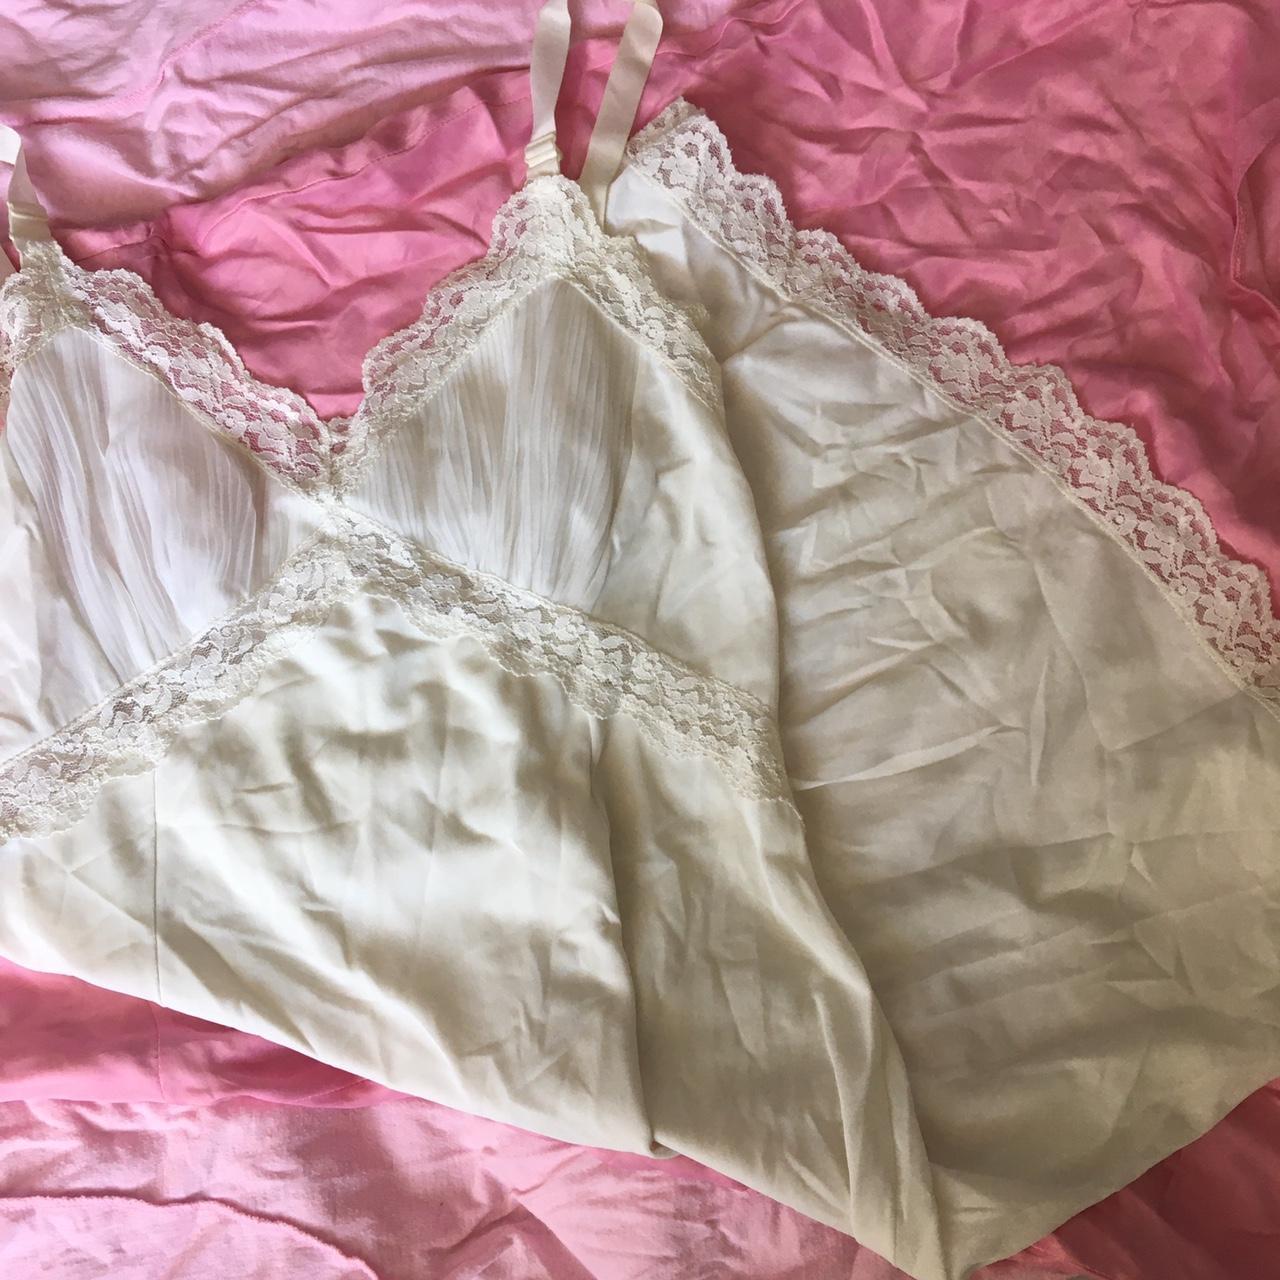 Selling this gorge vintage 90s lingerie slip dress... - Depop